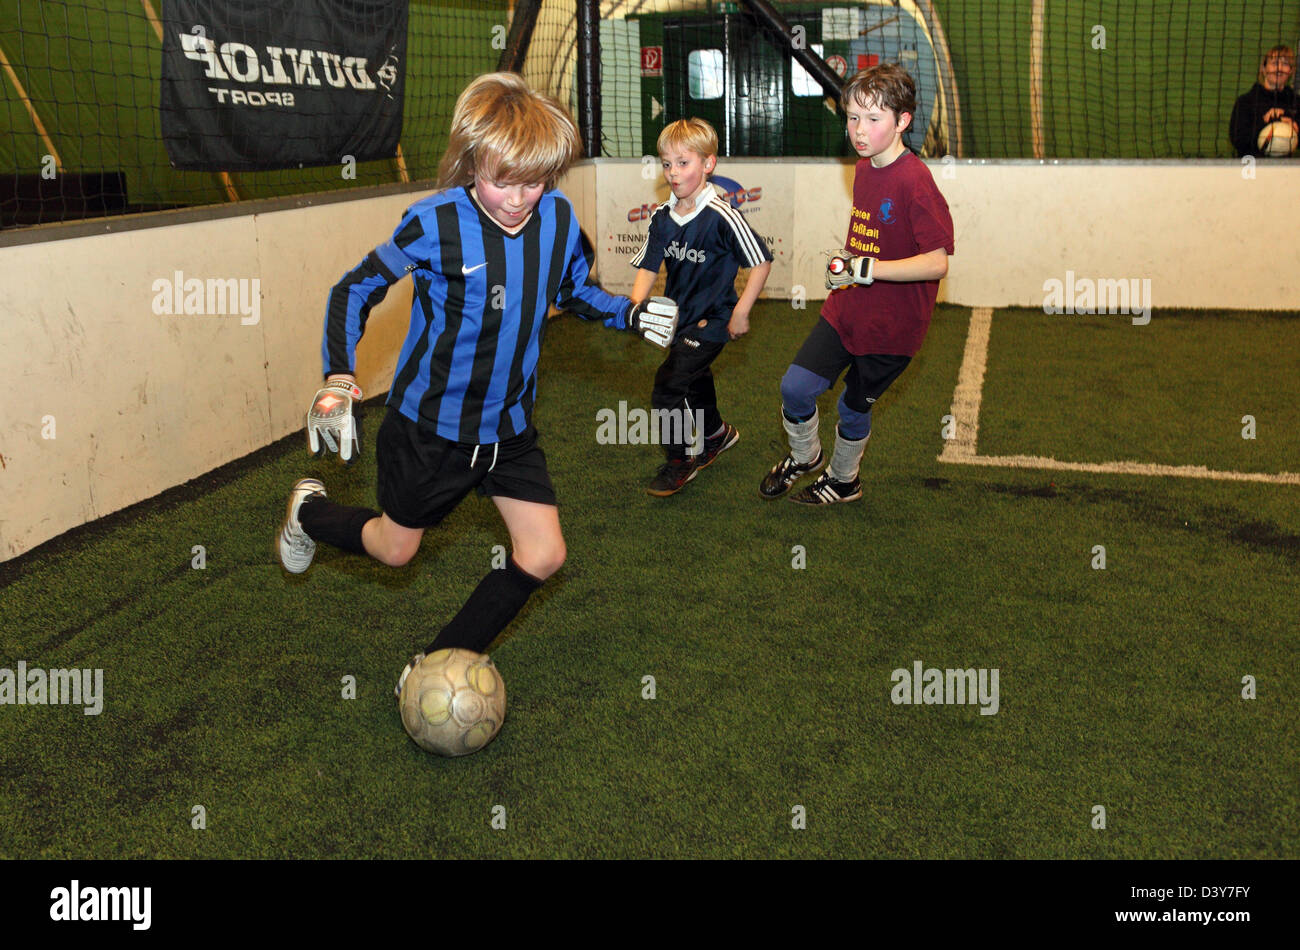 Berlín, Alemania, los niños juegan fútbol Foto de stock